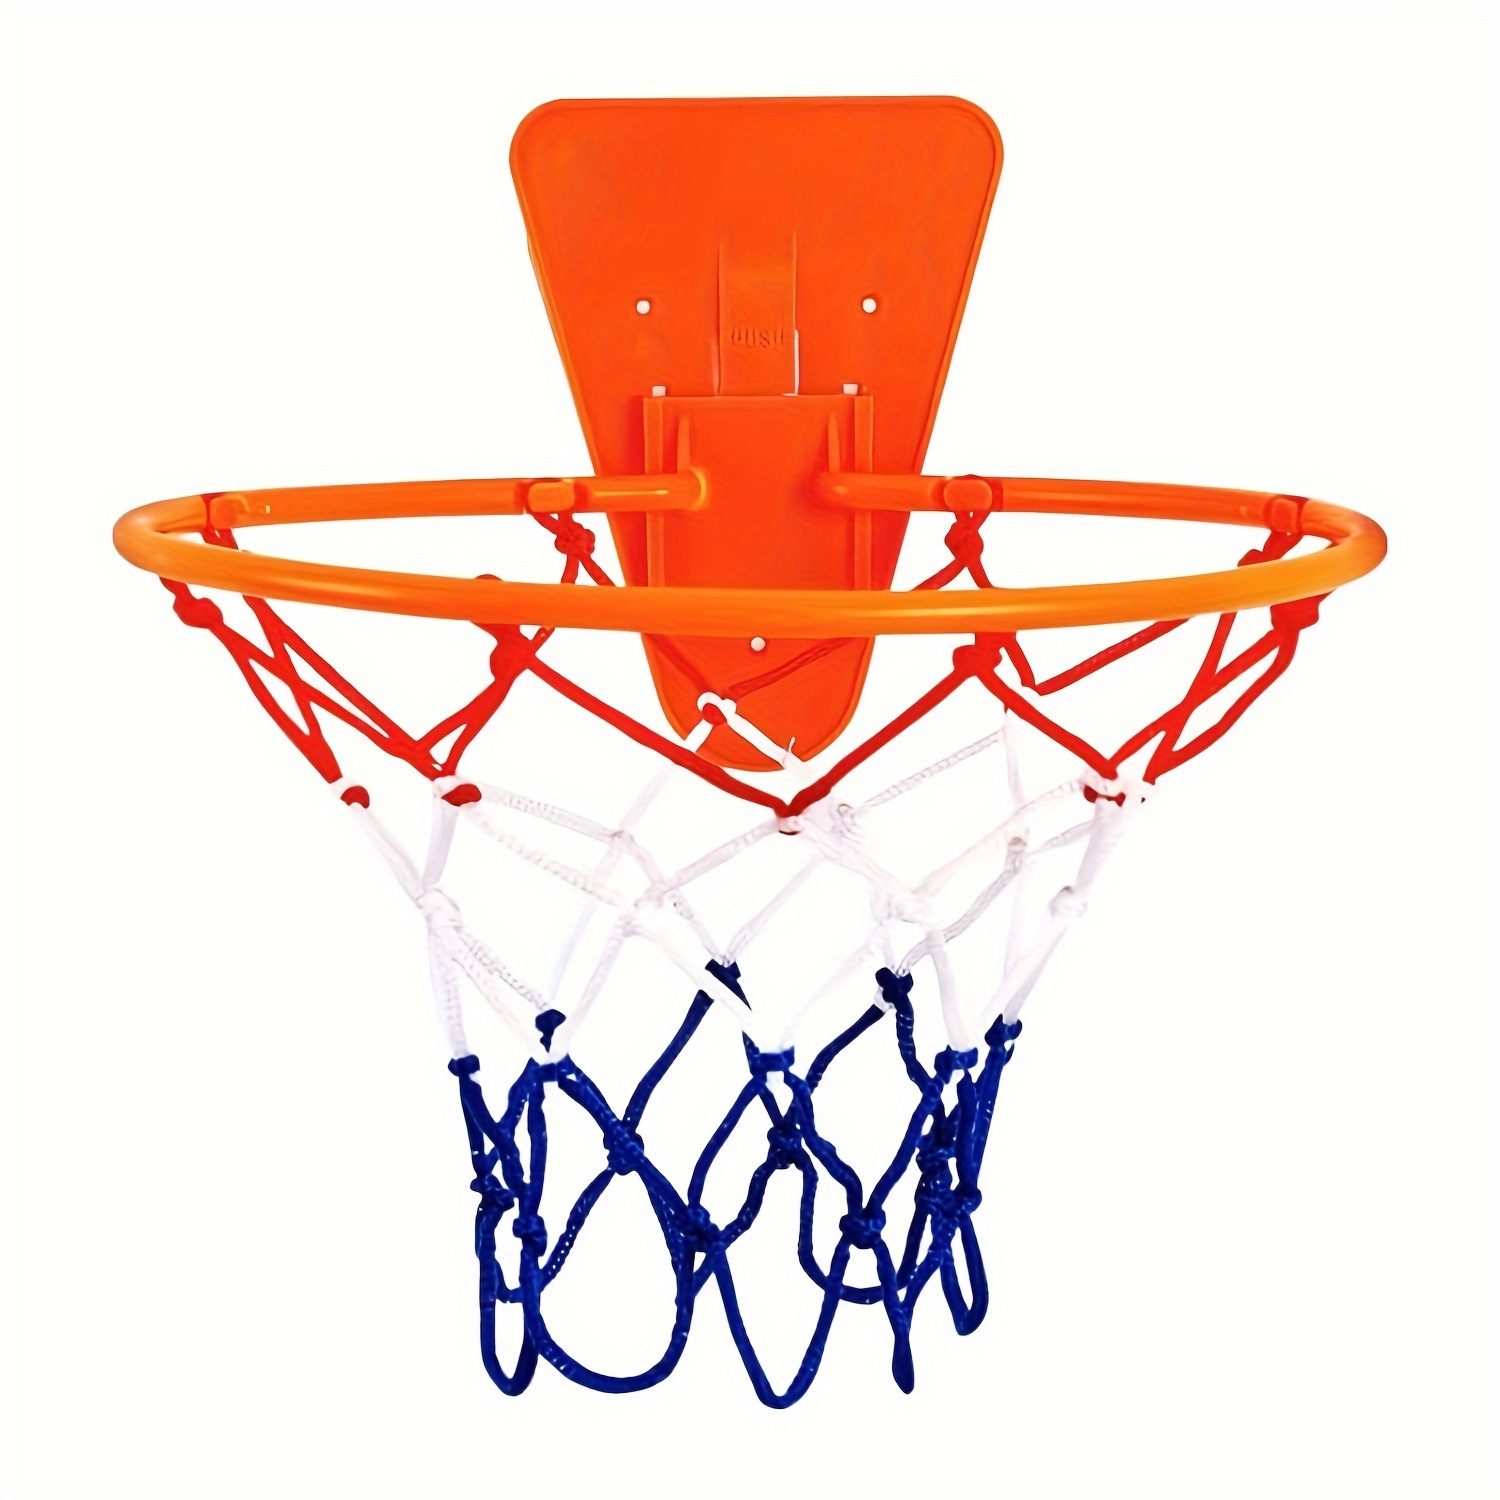 QDRAGON Mini Canestro Basket da Camera, Canestro Basket da Muro Basketball  Hoop con 3 Palline per Ragazzi, Ragazze, Bambini e Adulti